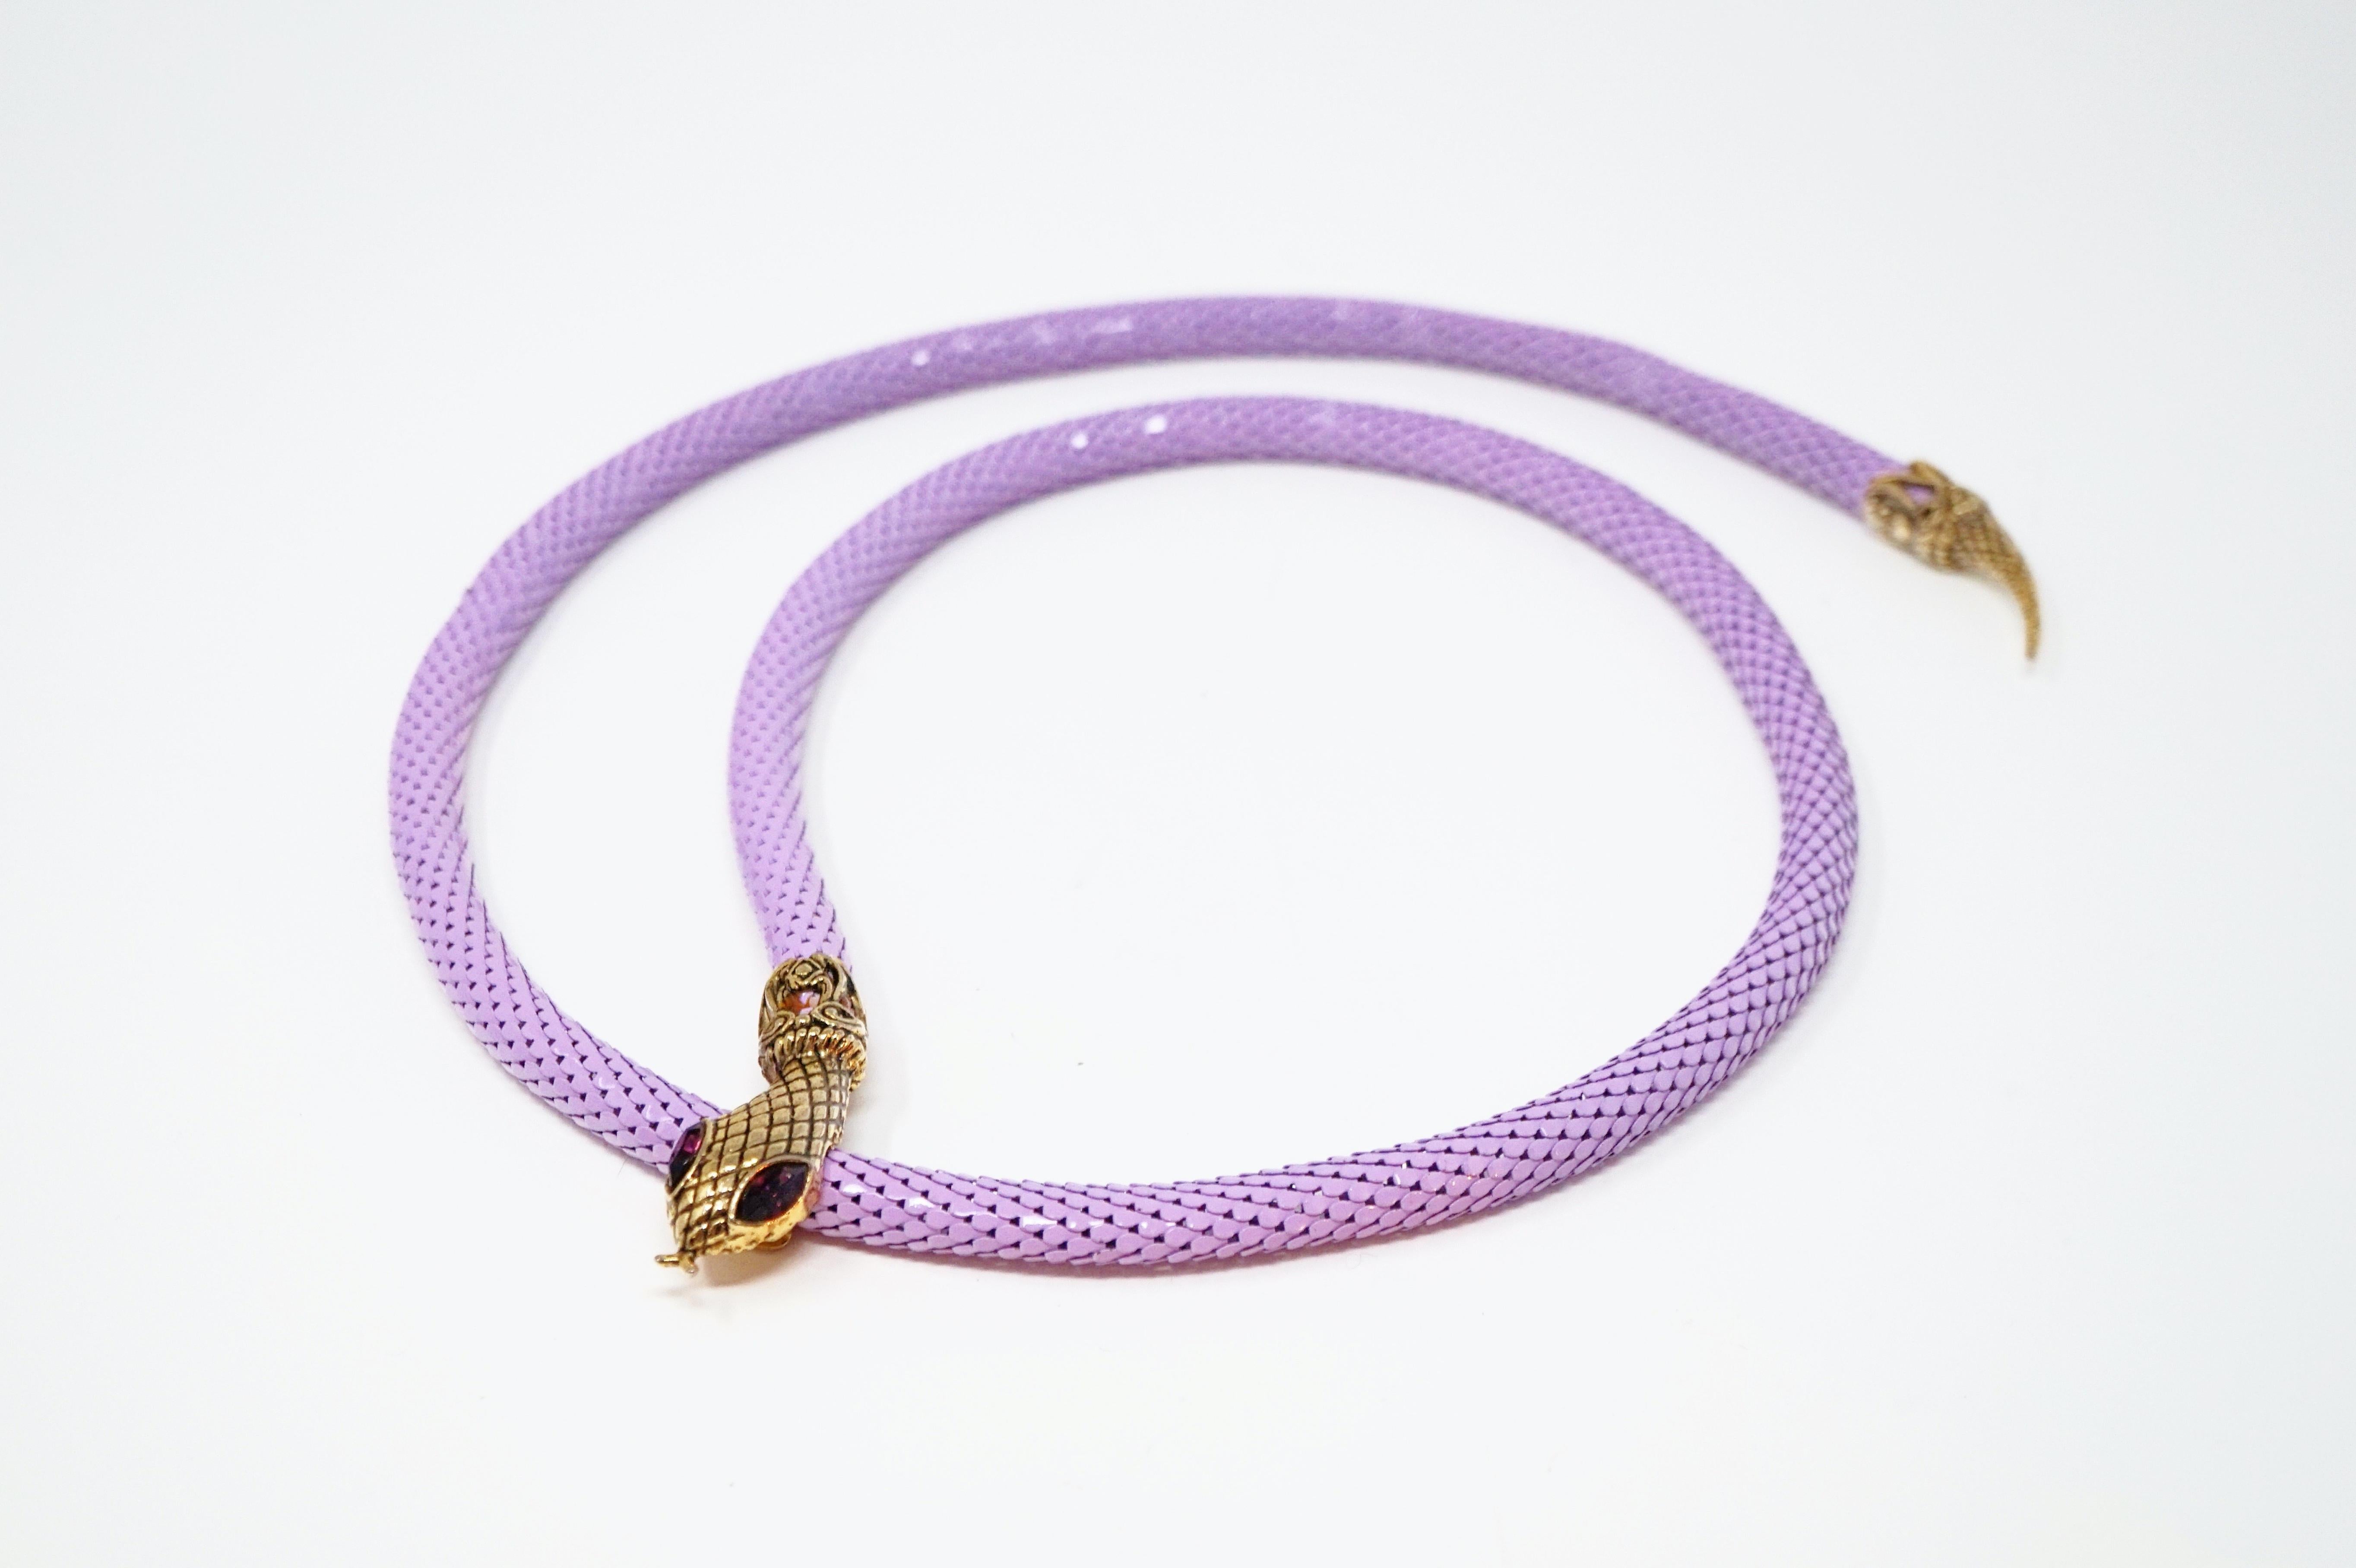 1980s Lavender Mesh Snake Belt or Necklace by DL Auld Co, Signed 2